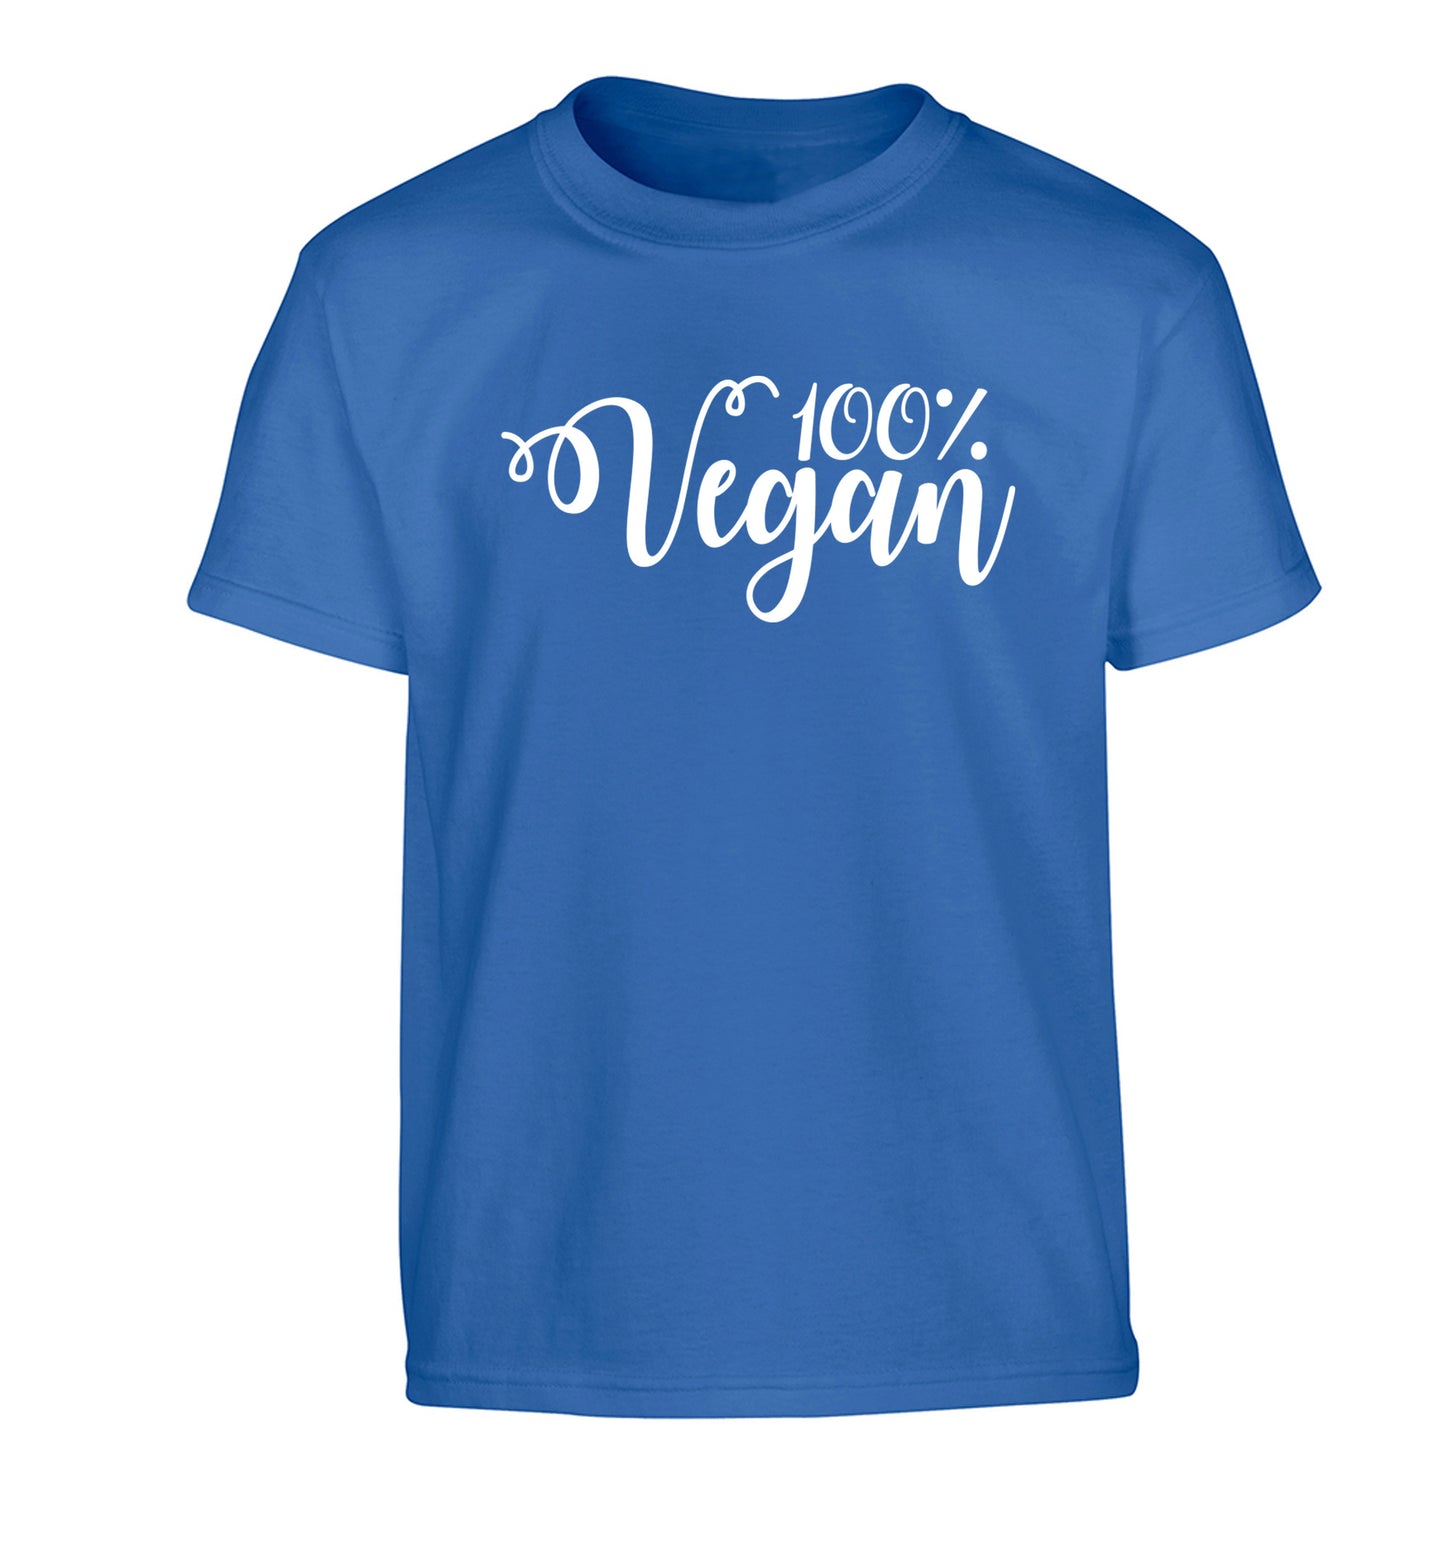 100% Vegan Children's blue Tshirt 12-14 Years